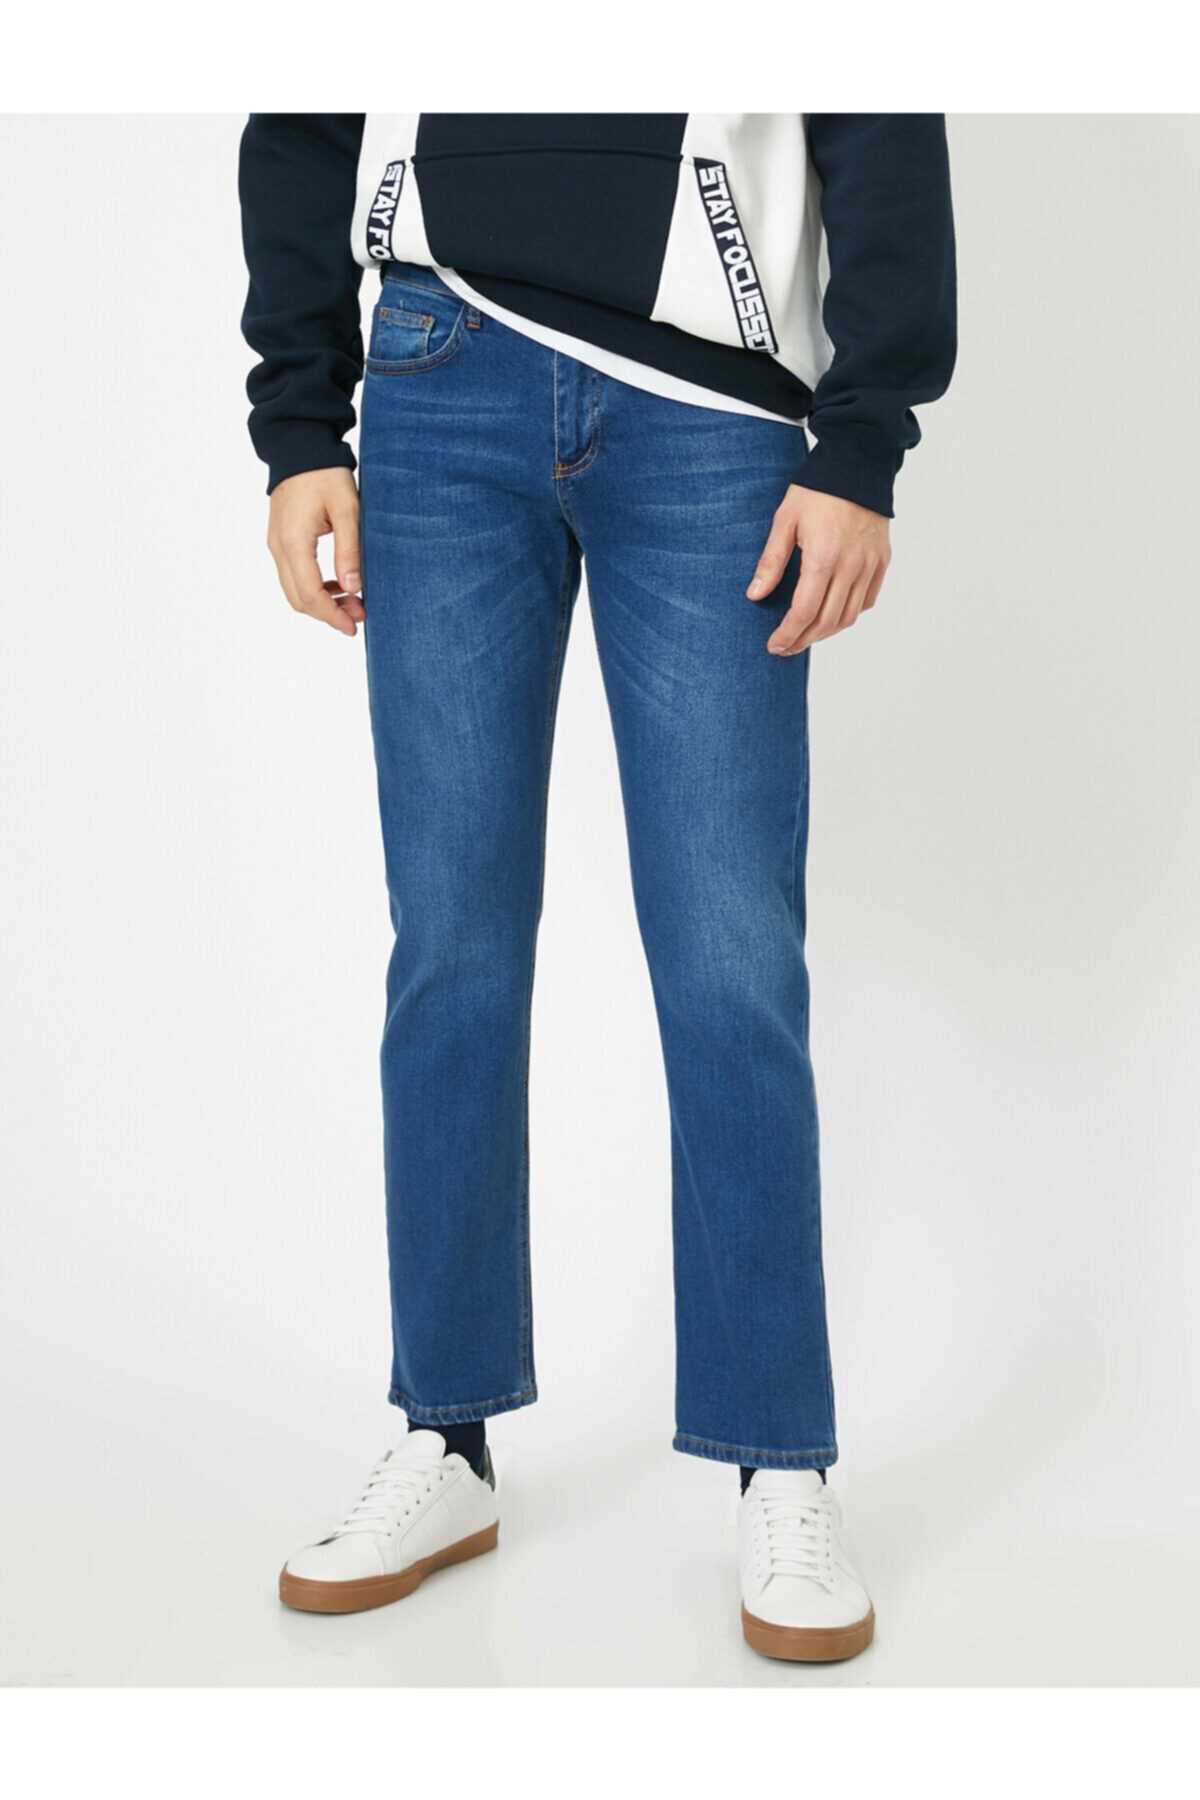 فروش شلوار جین مردانه برند کوتون رنگ سرمه ای ty35457311